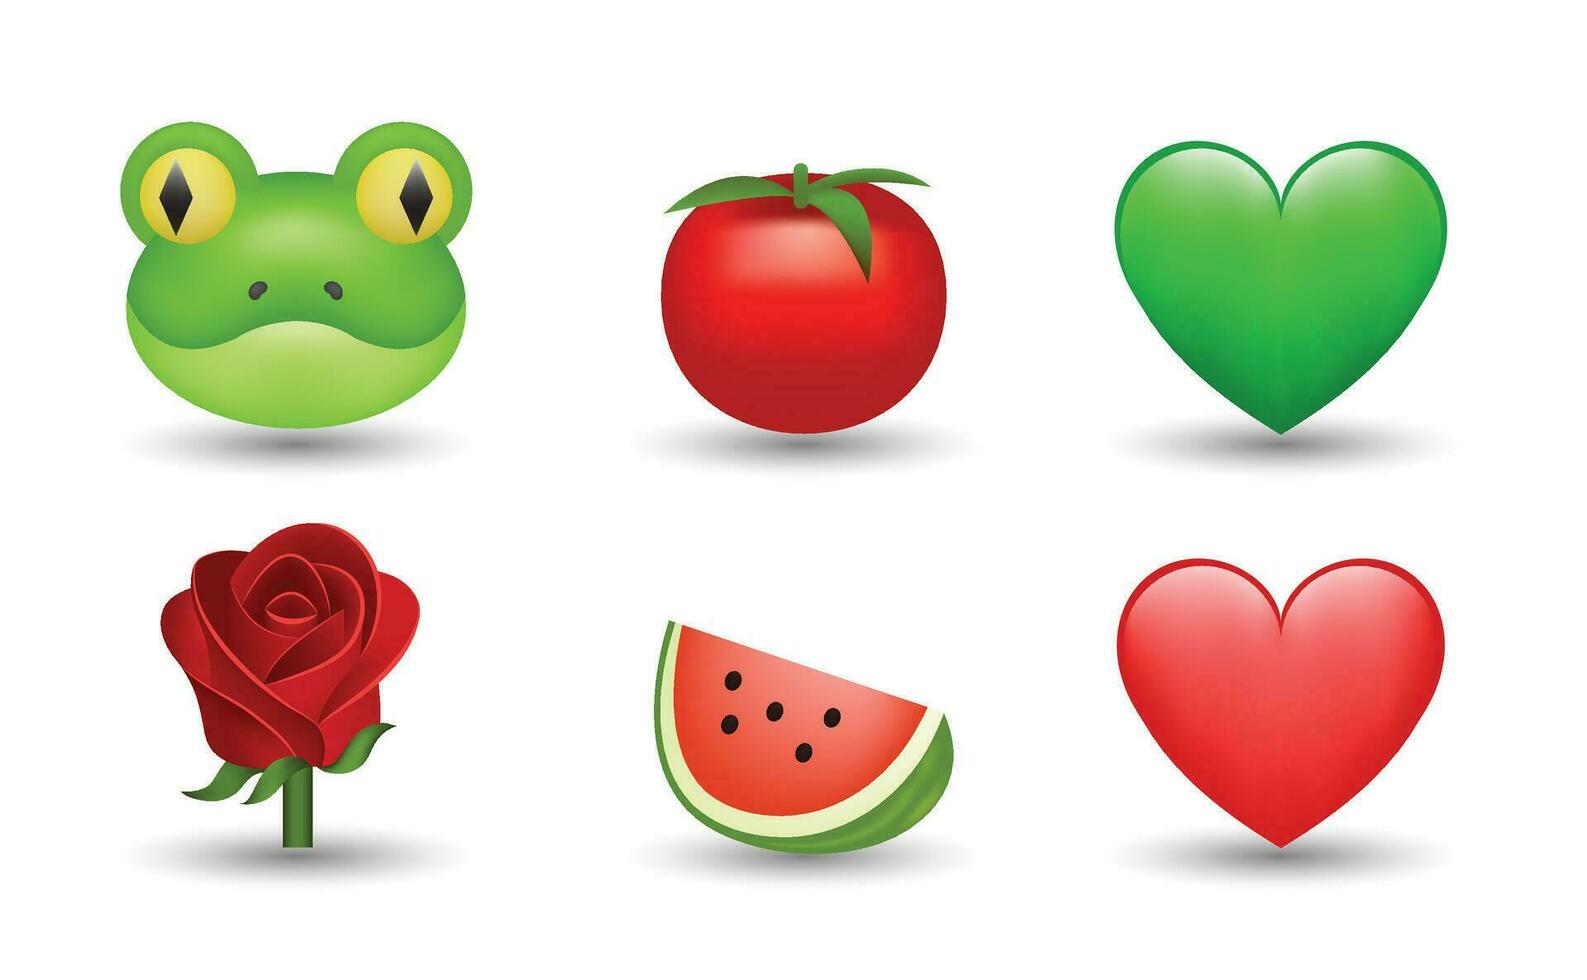 6 Emoticon isoliert auf Weiß Hintergrund. isoliert Vektor Illustration. Frosch, Tomate, Grün Herz, rot Herz, rot Rose, Wassermelone Vektor Emoji Illustration. 3d Illustration Satz.